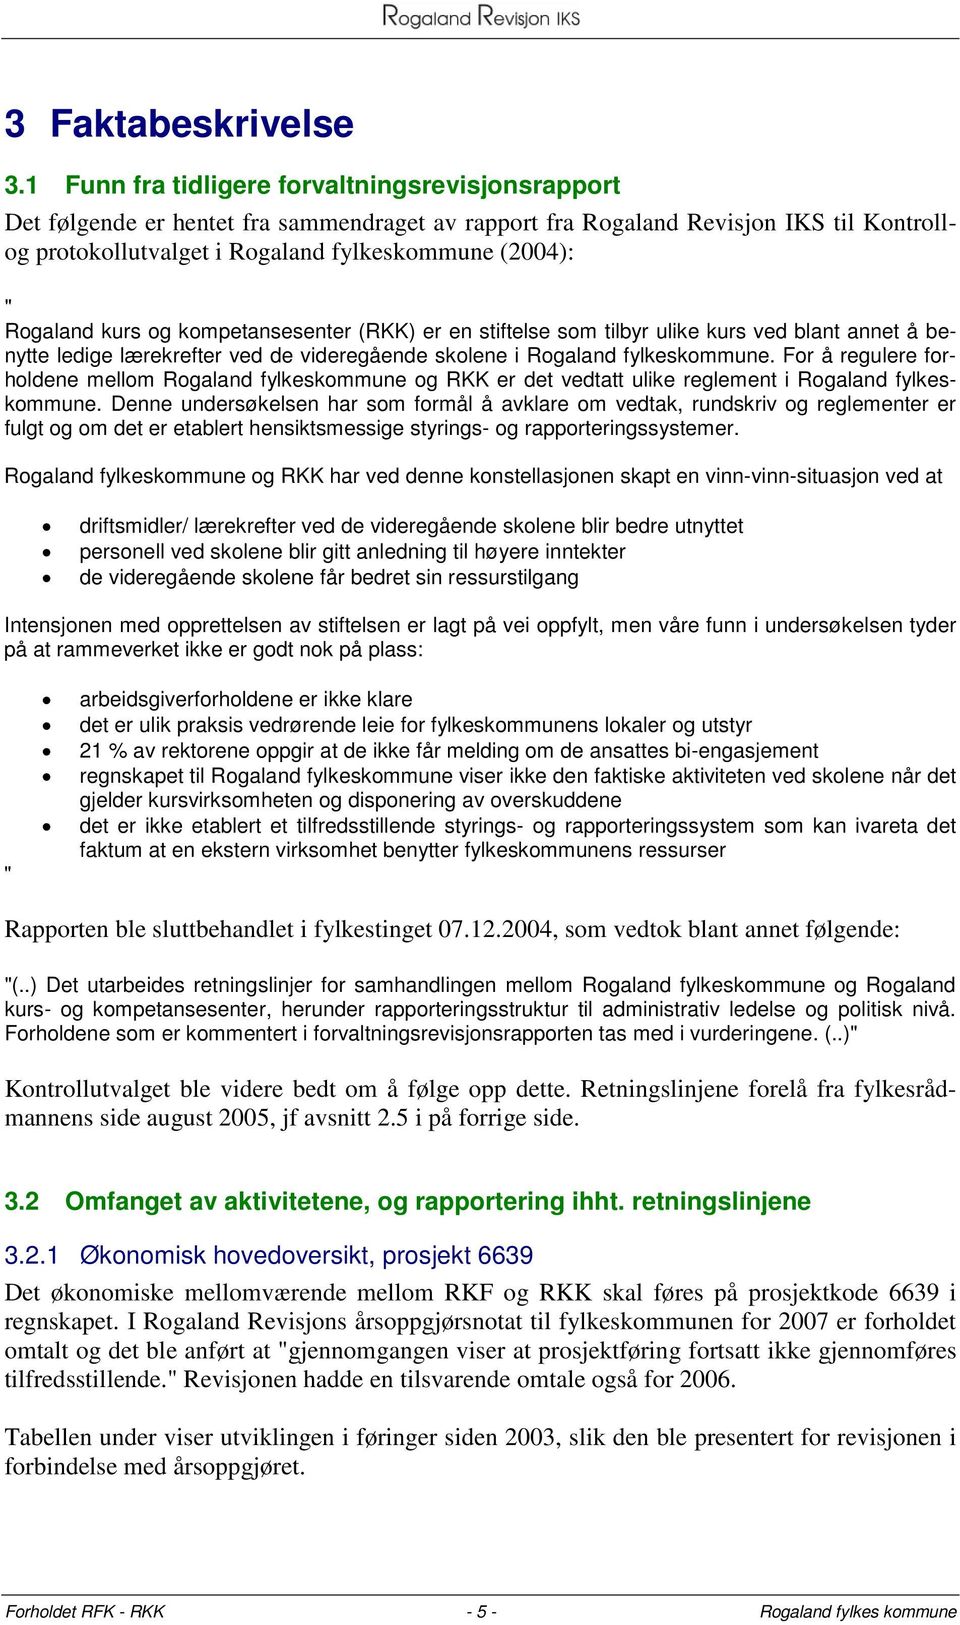 Rogaland kurs og kompetansesenter (RKK) er en stiftelse som tilbyr ulike kurs ved blant annet å benytte ledige lærekrefter ved de videregående skolene i Rogaland fylkeskommune.